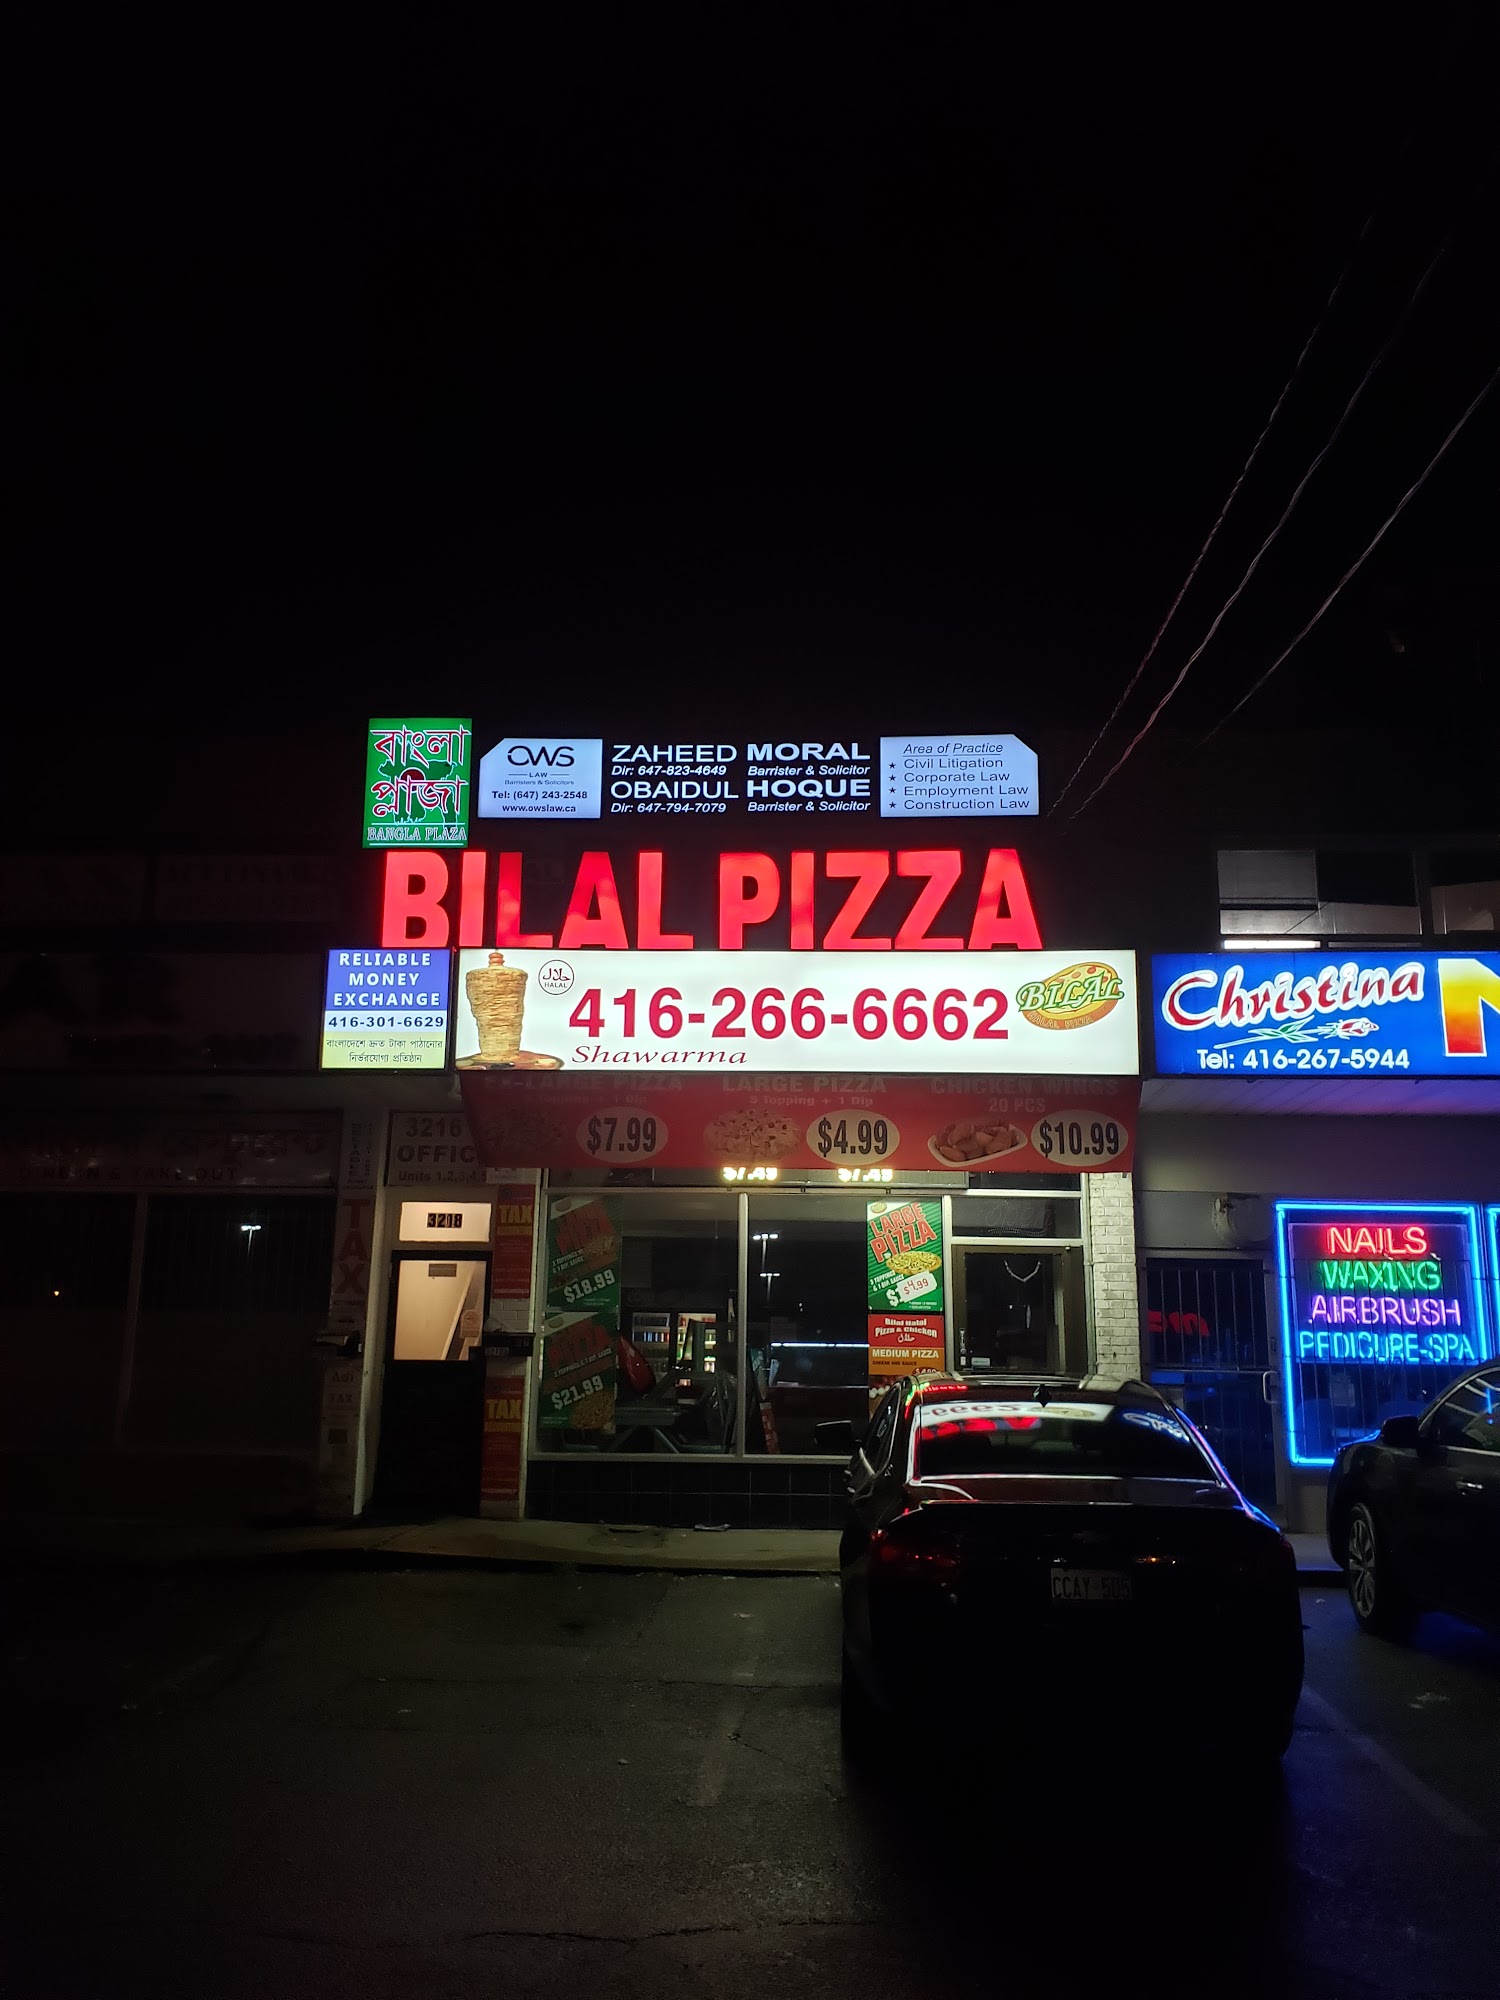 Bilal Pizza